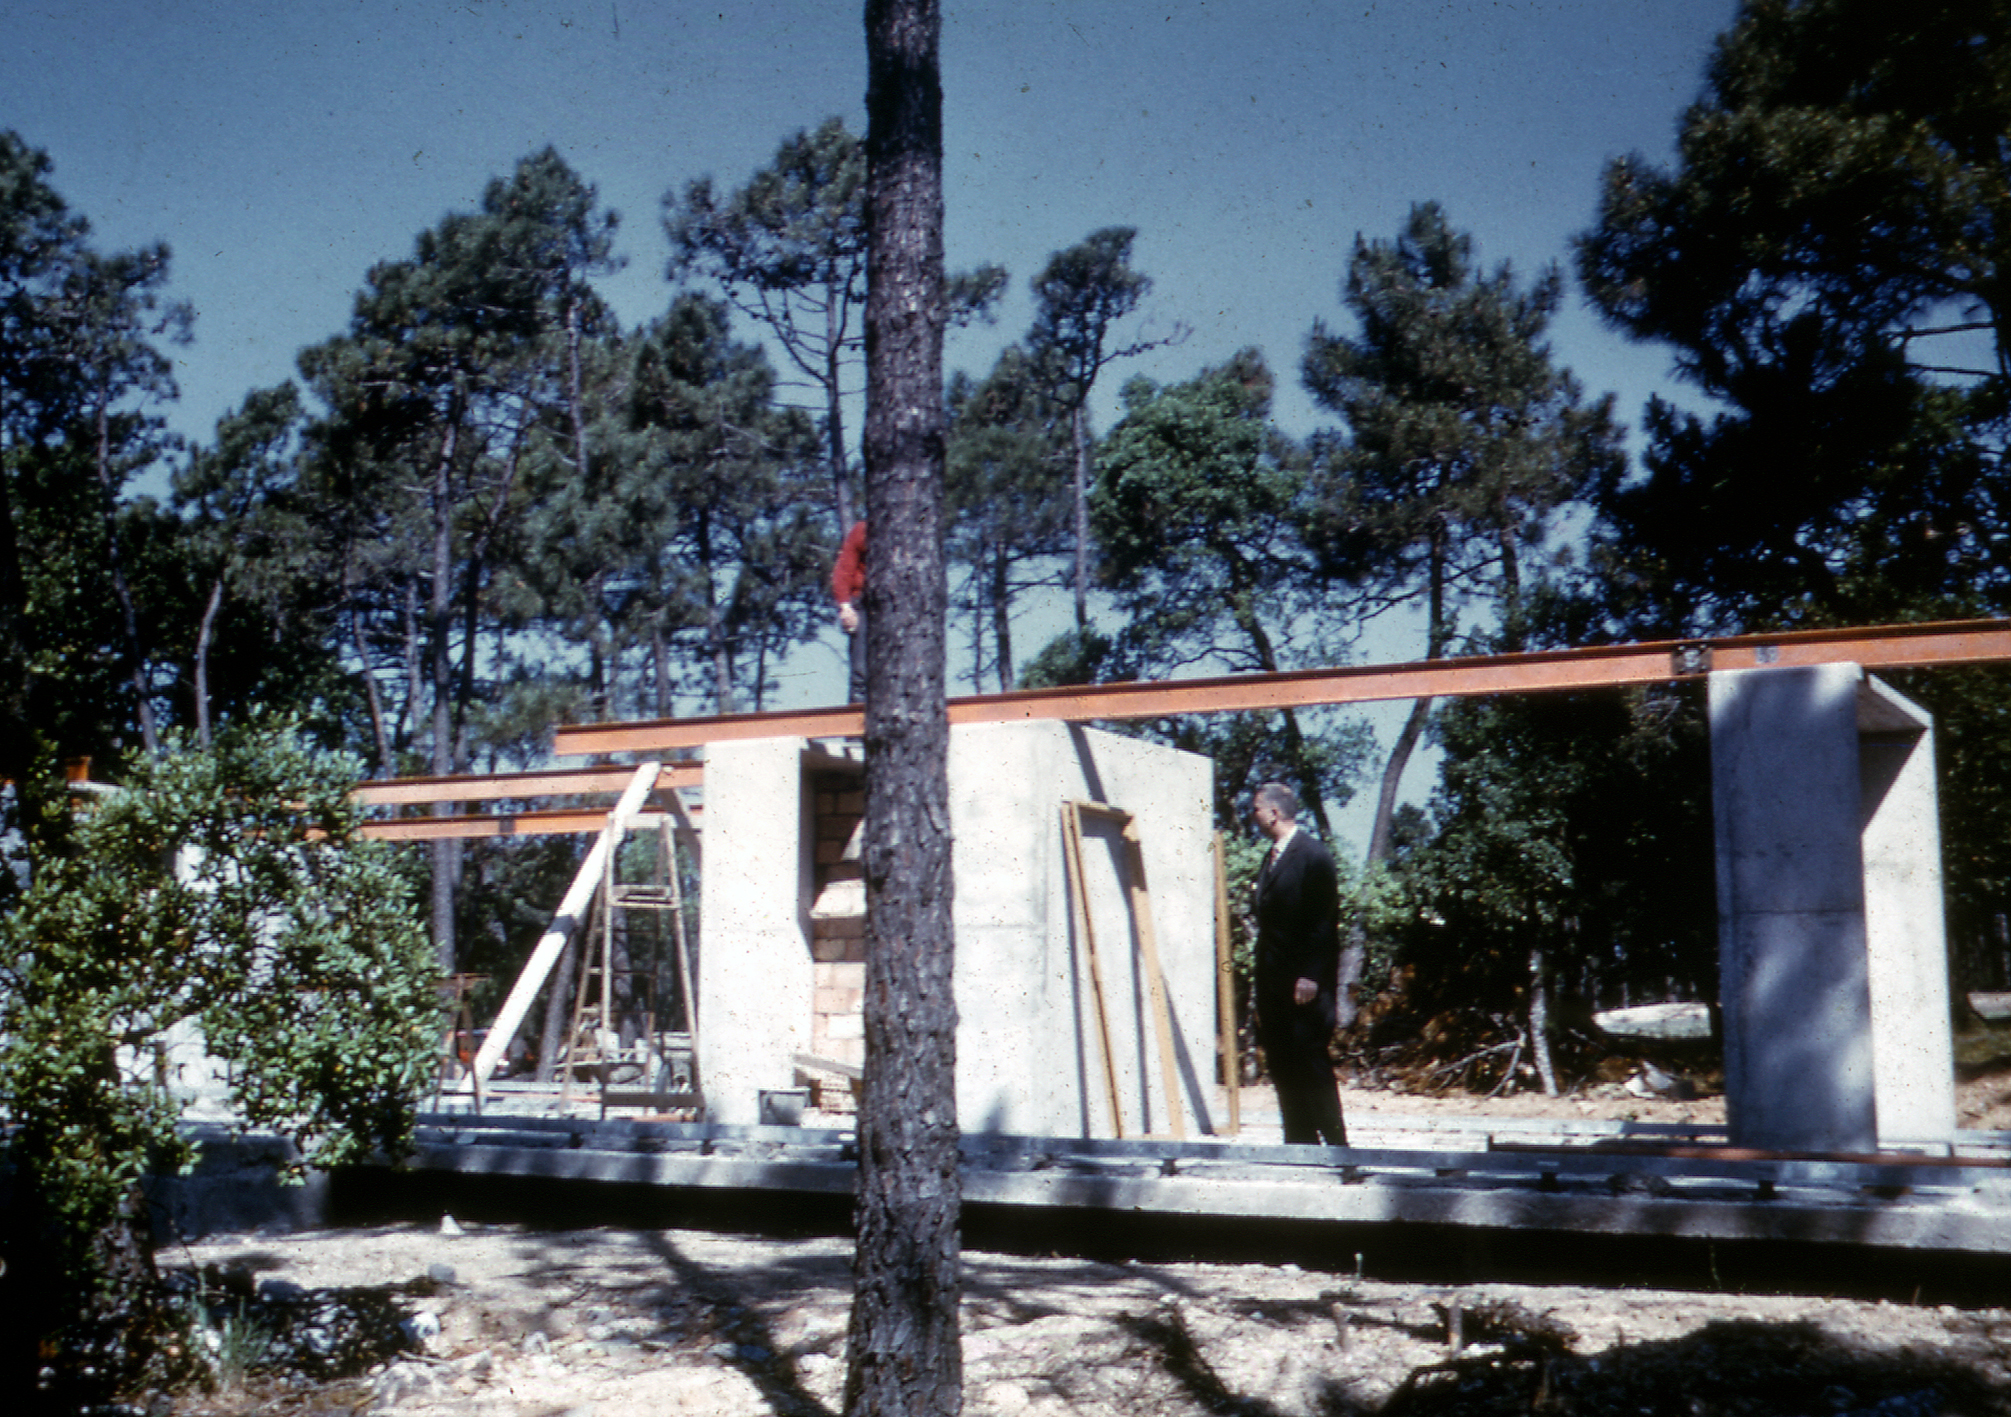 Villa Seynave, Domaine de Beauvallon, Grimaud, 1961 (Jean Prouvé, with architects N. Hutchison, J. Parente, M. Sauzet, J. Vilfour). View of the building site with Jean Prouvé.